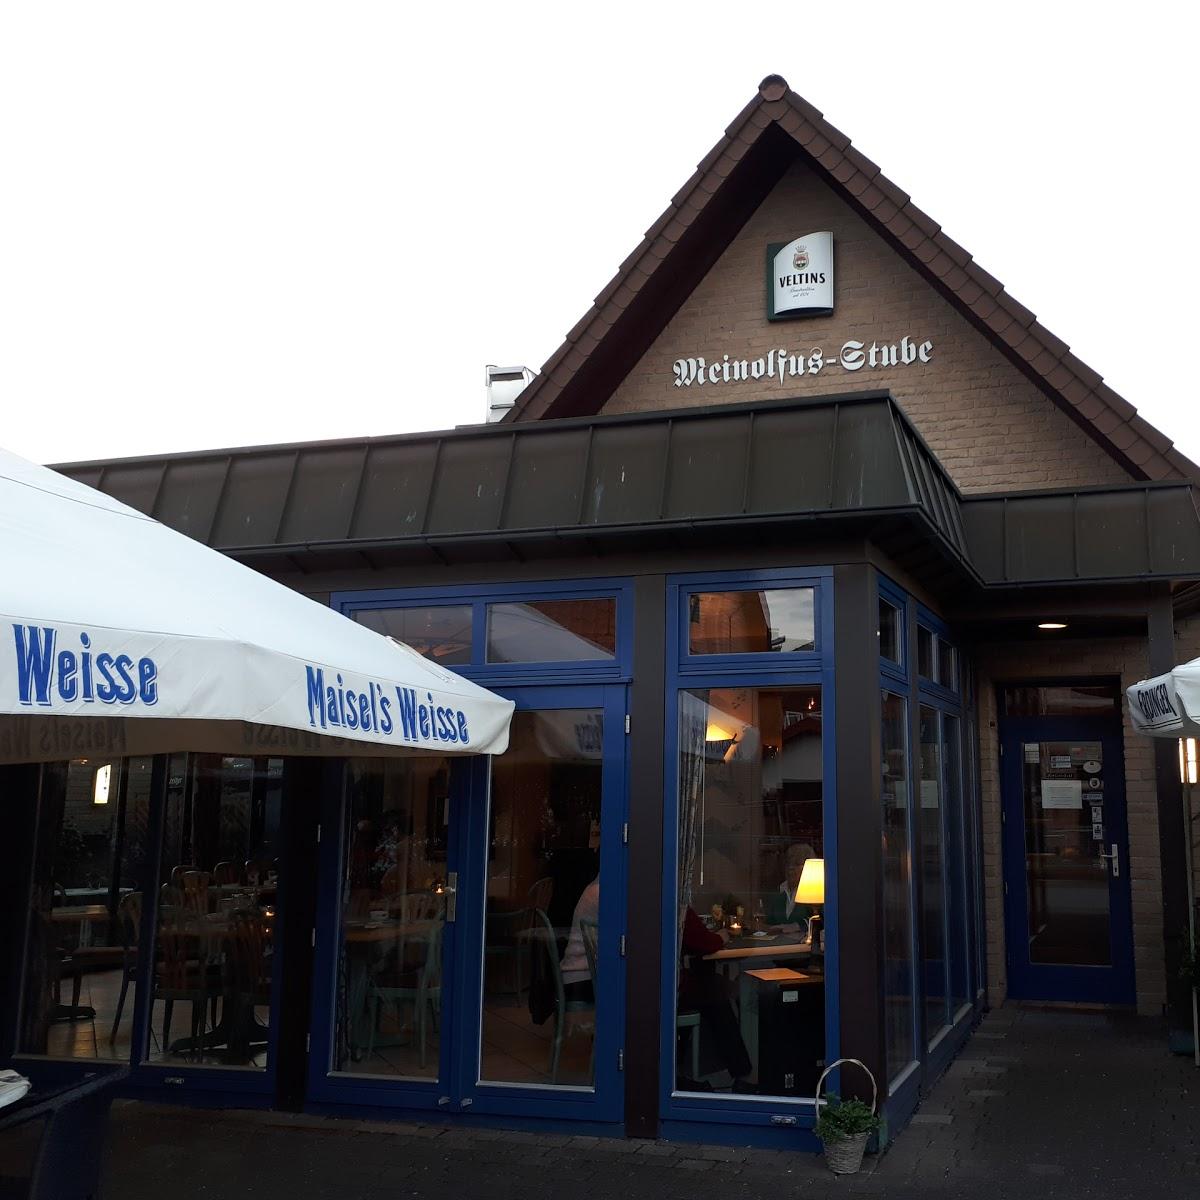 Restaurant "Meinolfusstube" in Paderborn